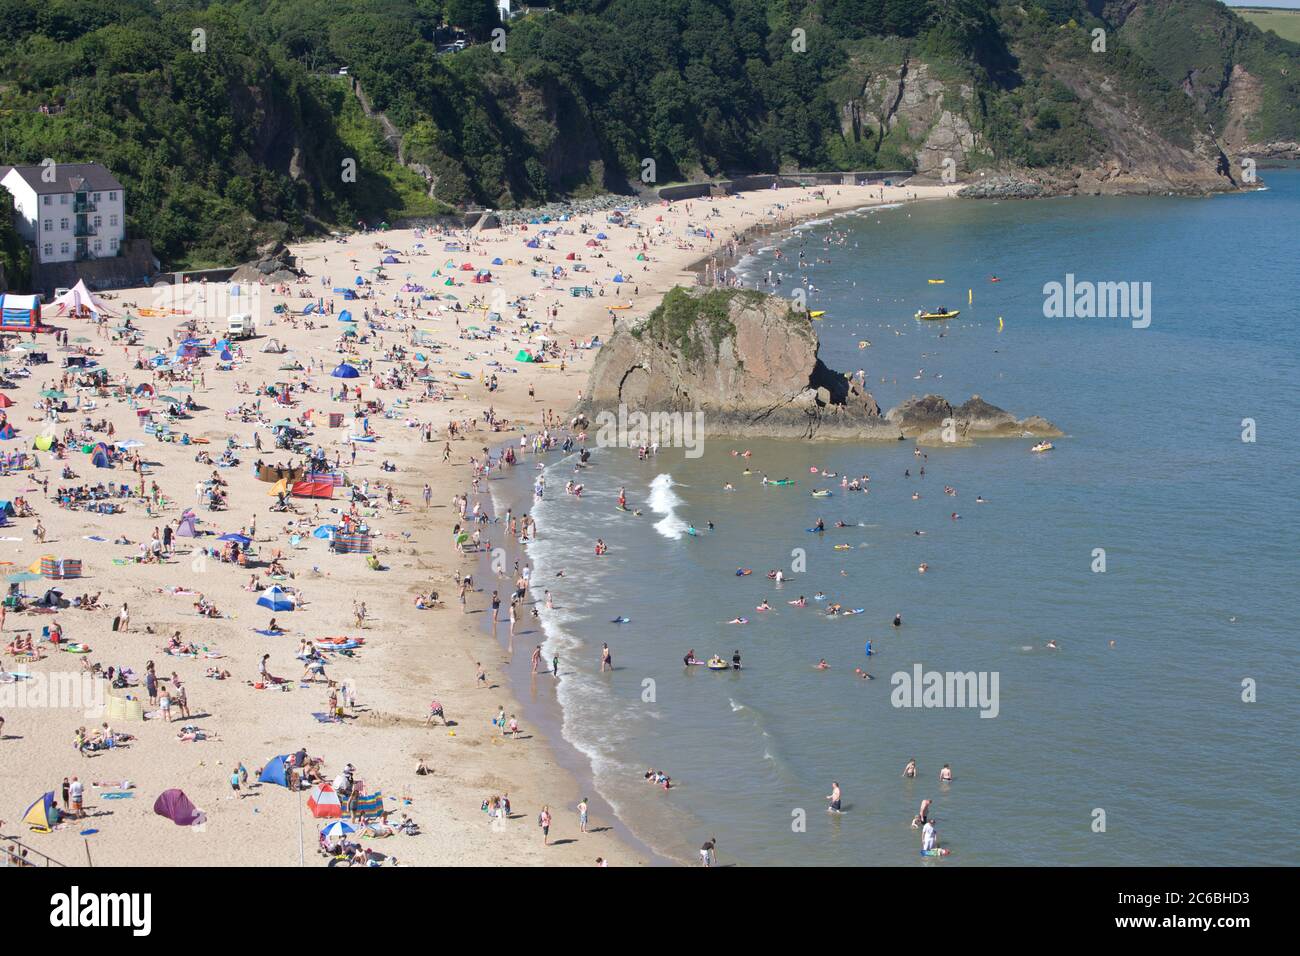 Spiaggia di Tenby, Pembrokeshire, Galles. Spiaggia affollata in una giornata calda. Divertimento estivo, spiaggia bellissima, spiaggia panoramica, turismo, staycation, luoghi di bellezza Foto Stock